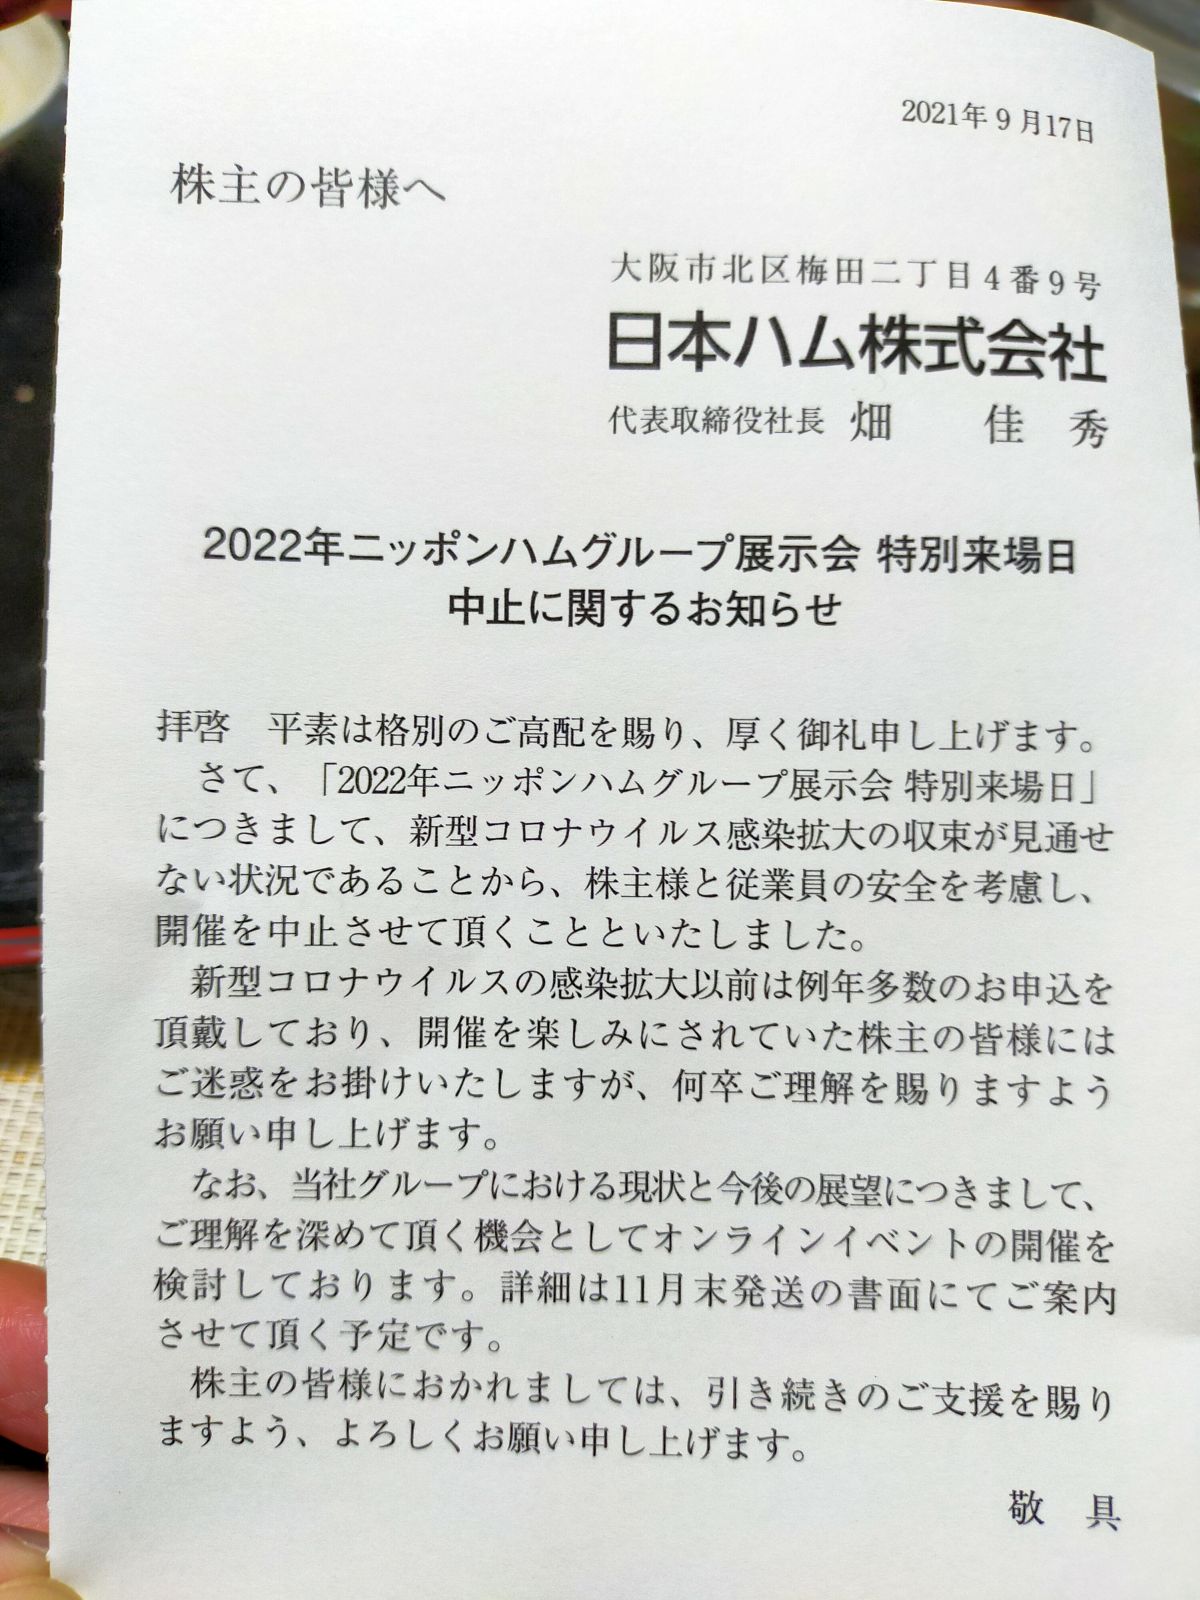 日本ハムグループ展示会 特別来場日中止に関するお知らせ